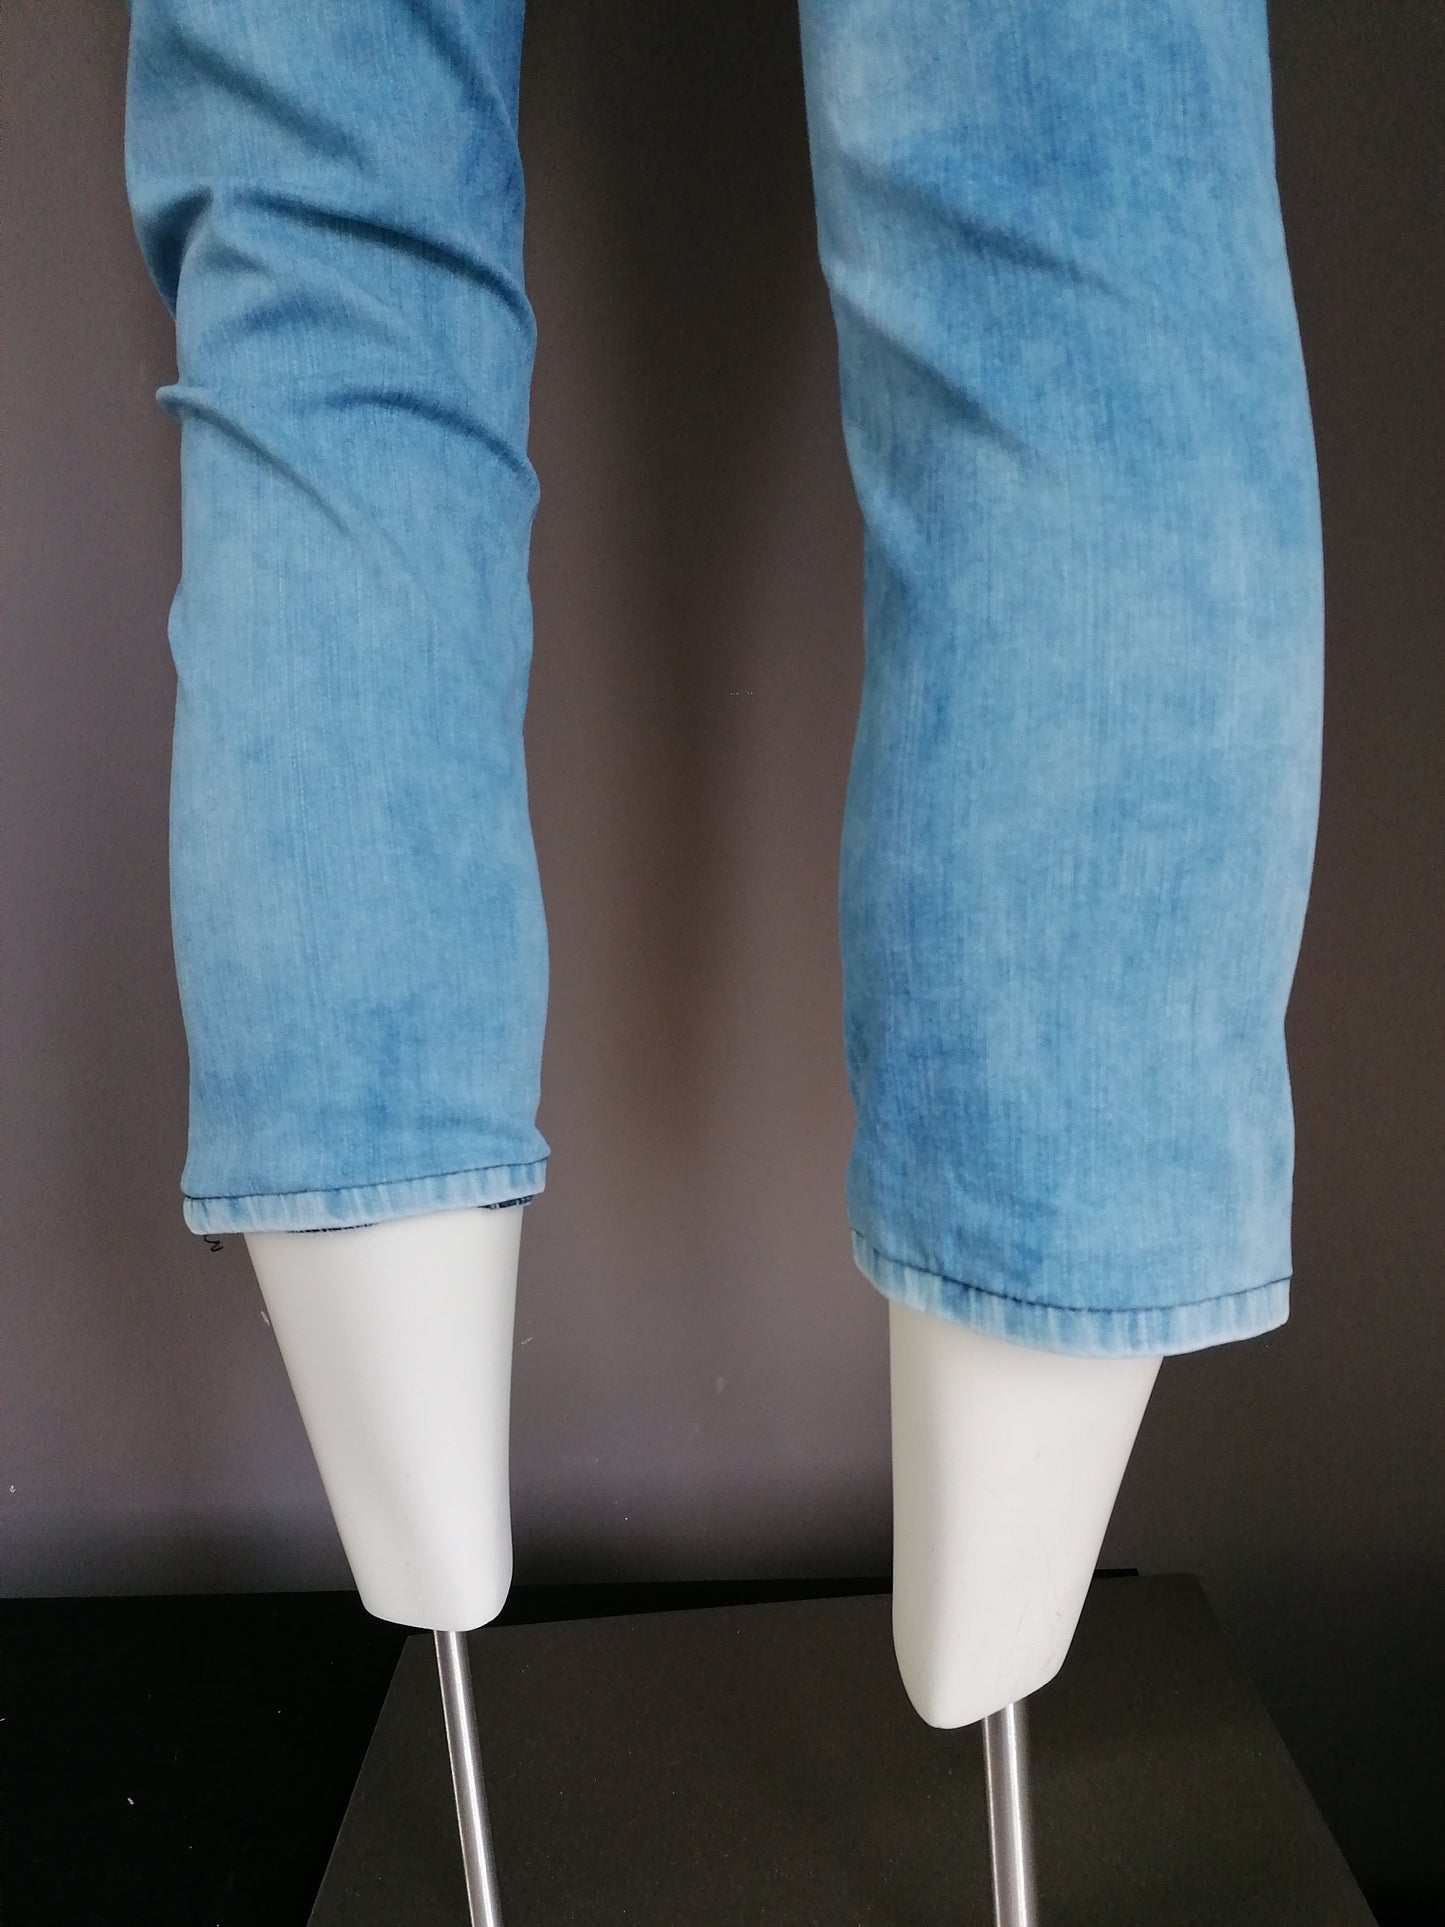 L.C. Waikiki Jeans. Azul claro coloreado. Tamaño W31-L 7/8. Los pantalones se han acortado